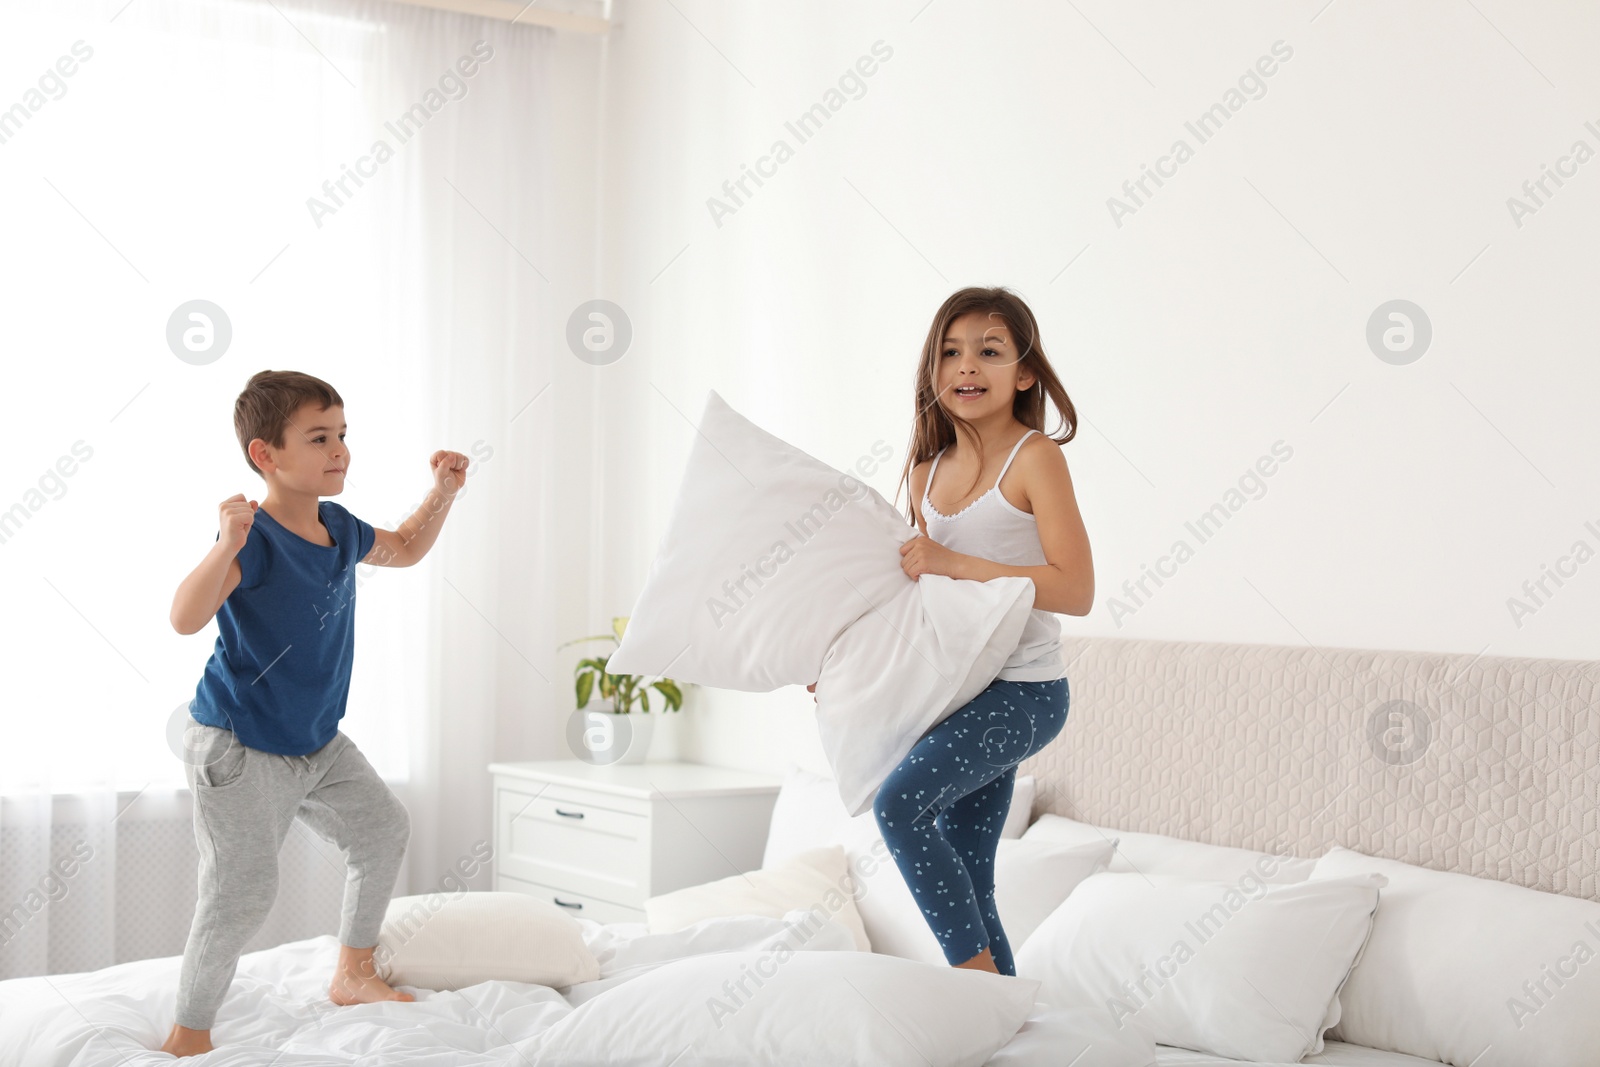 Photo of Happy children having pillow fight in bedroom